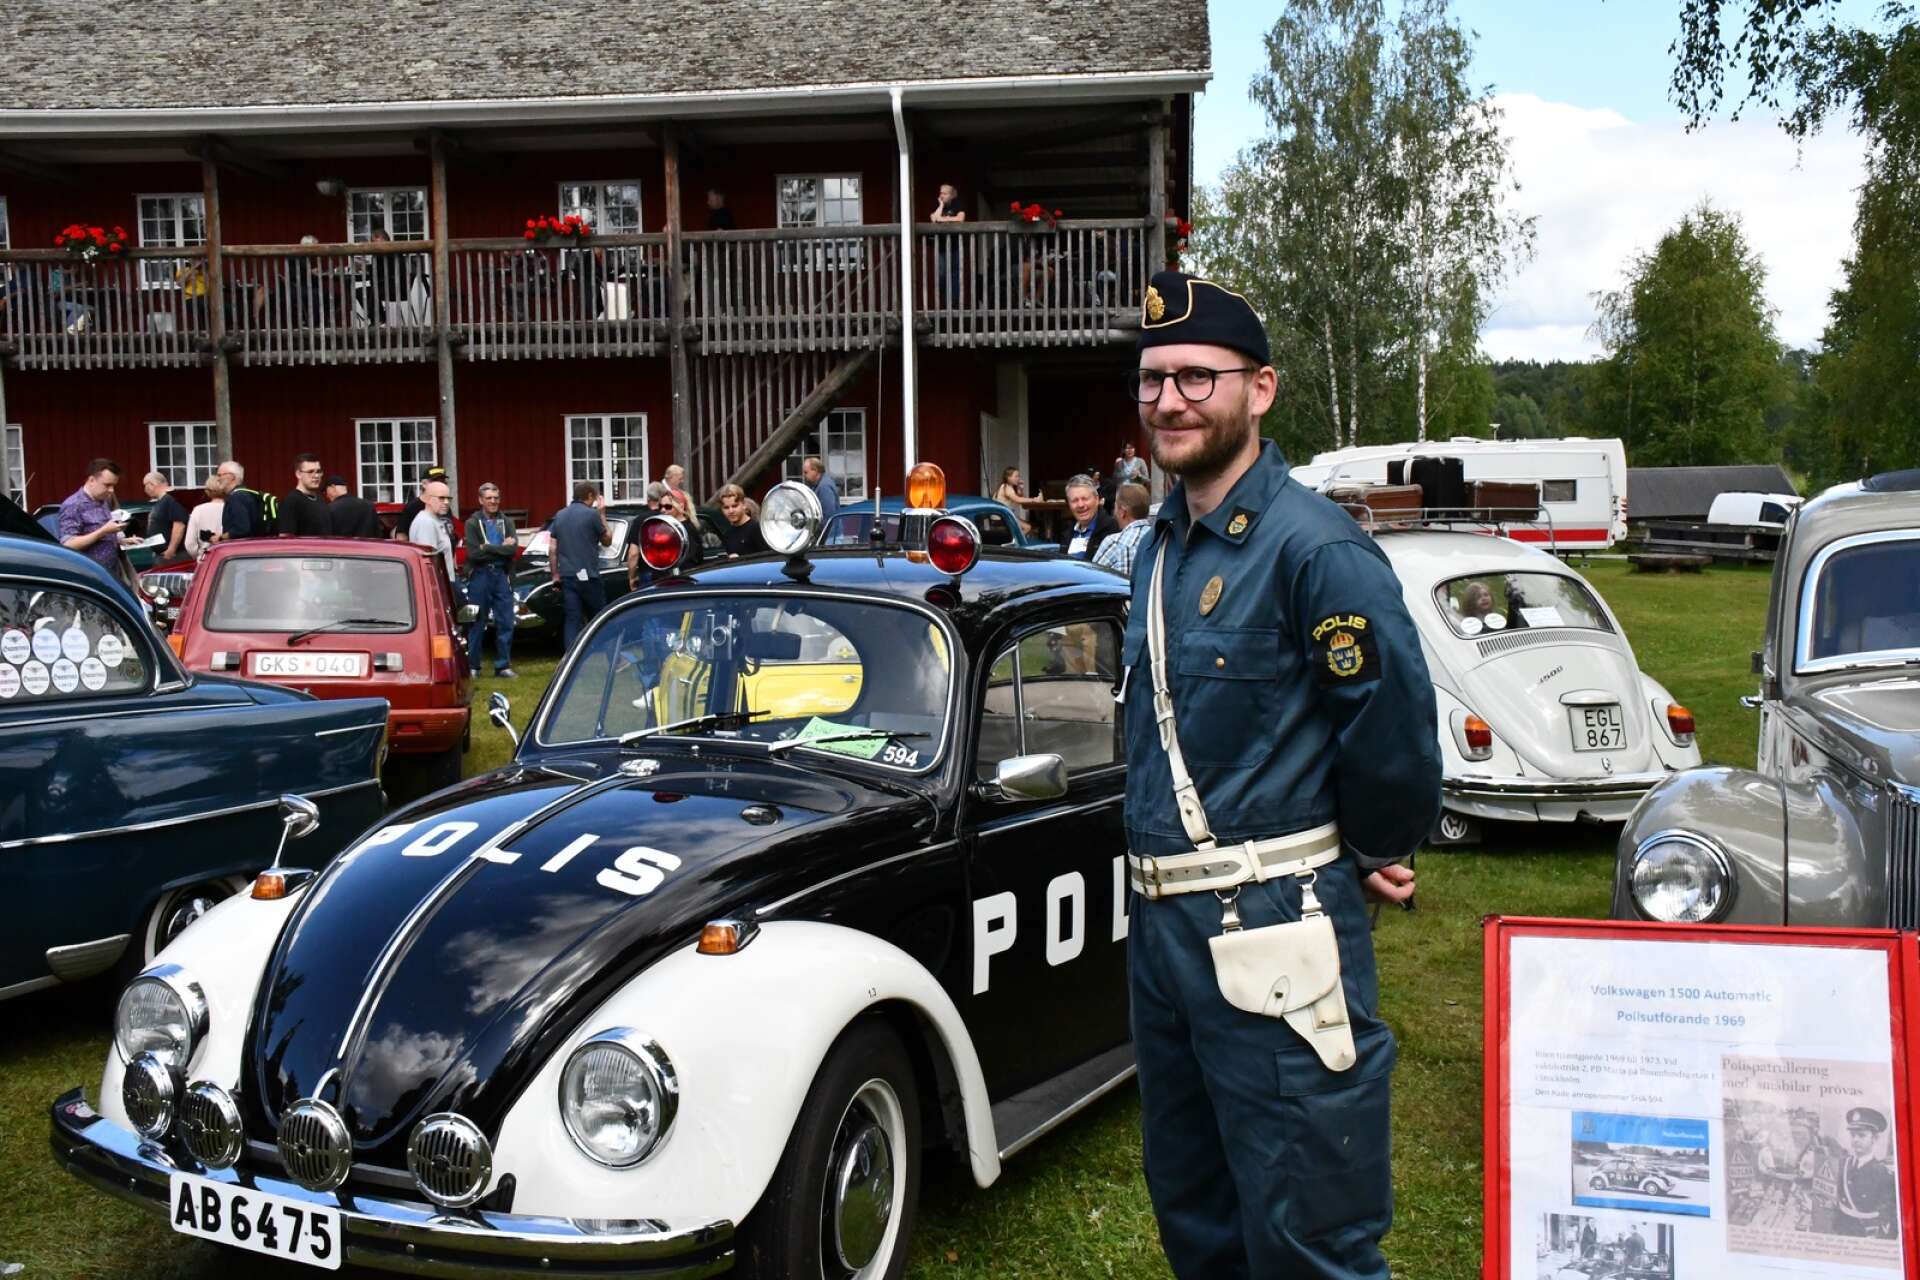 David Pettersson iförd autentisk polisuniform. Här med hans väns Volkswagen 1500 Automatic i polisutförande från 1969.